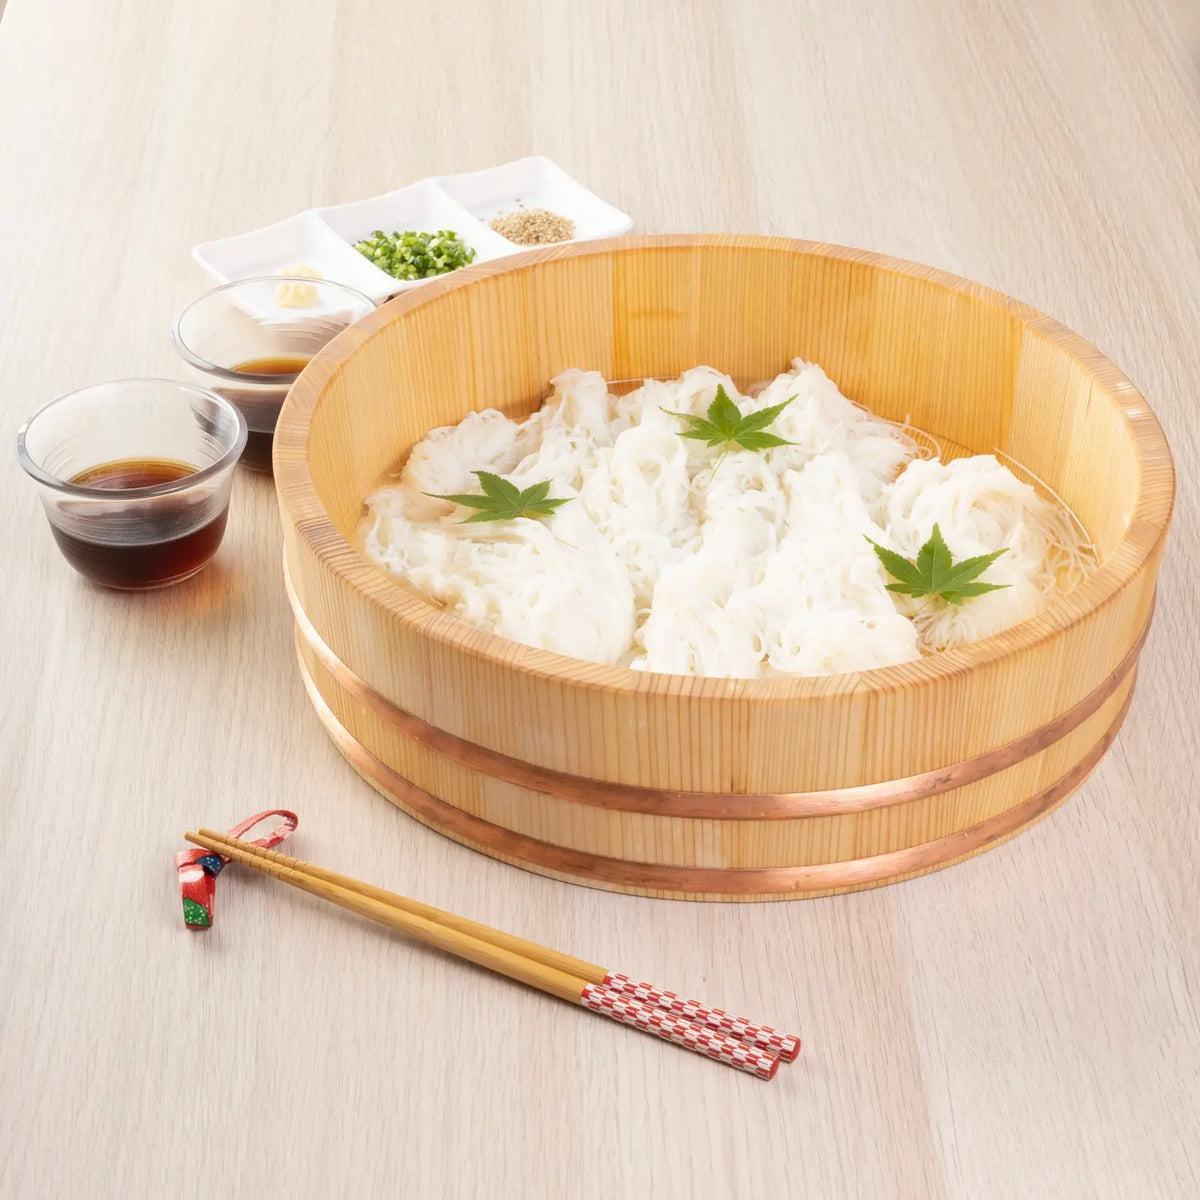 MIYABI URUSHI KOGEI Hangiri Sawara Wooden Rice Mixing Bowl